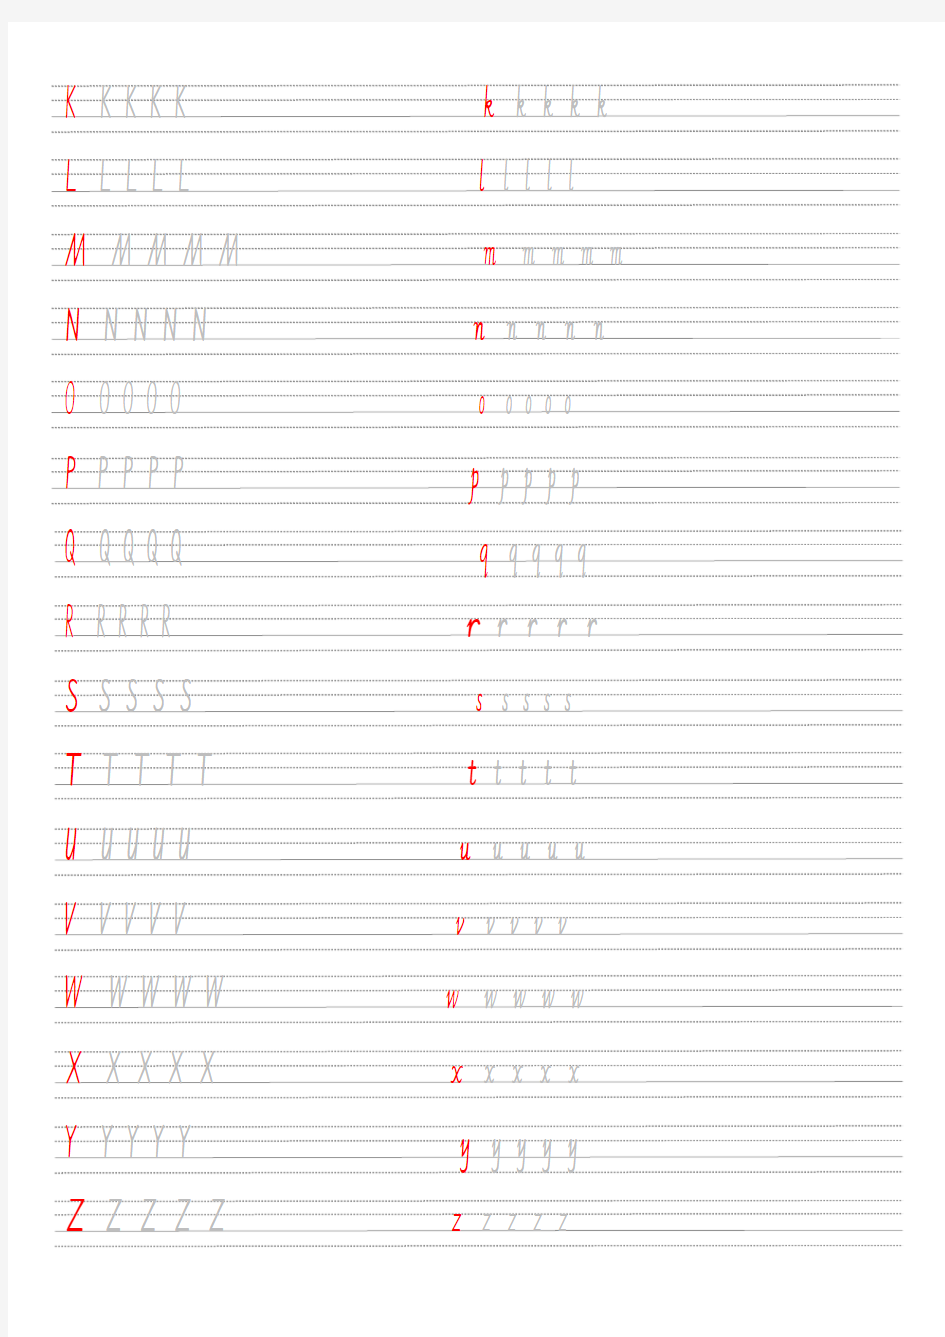 26个英文字母大小写书写练习字帖